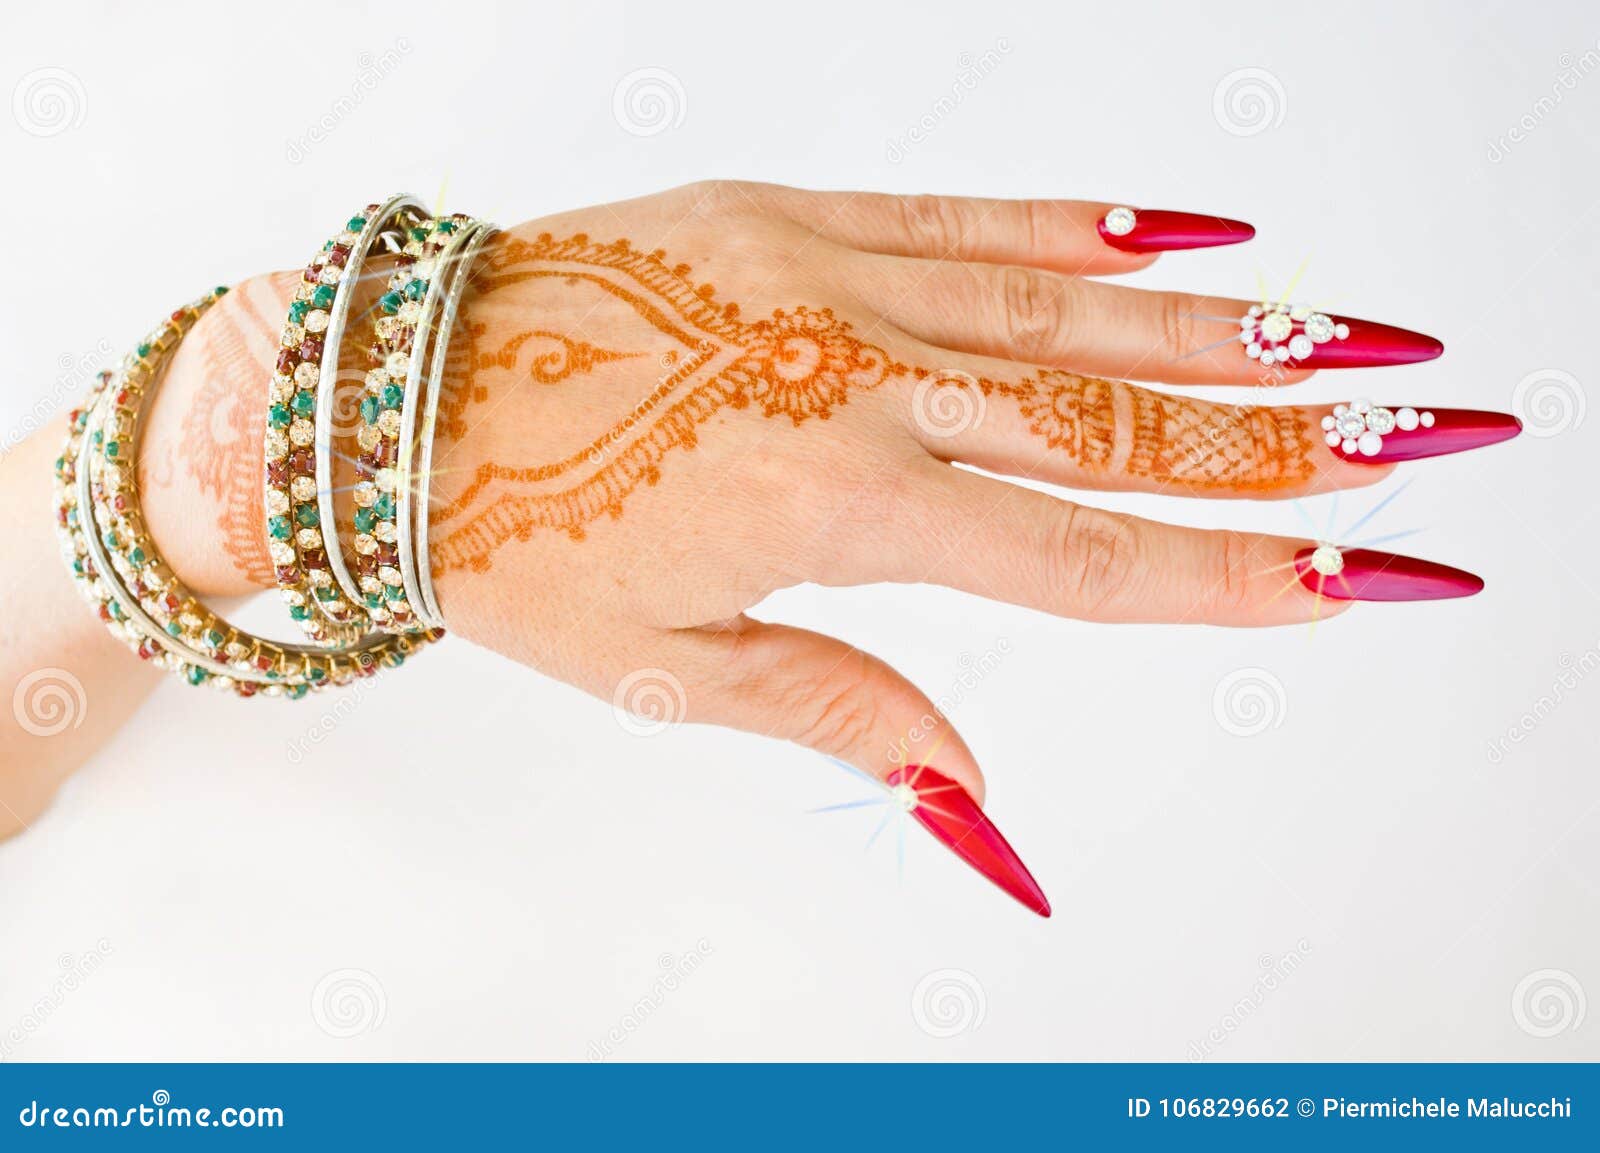 Bracelet Type Mehndi Design Easy | Bracelet Mehndi Design 2019 | Mehendi  Training Center | Finger mehndi style, Henna designs, Mehndi designs